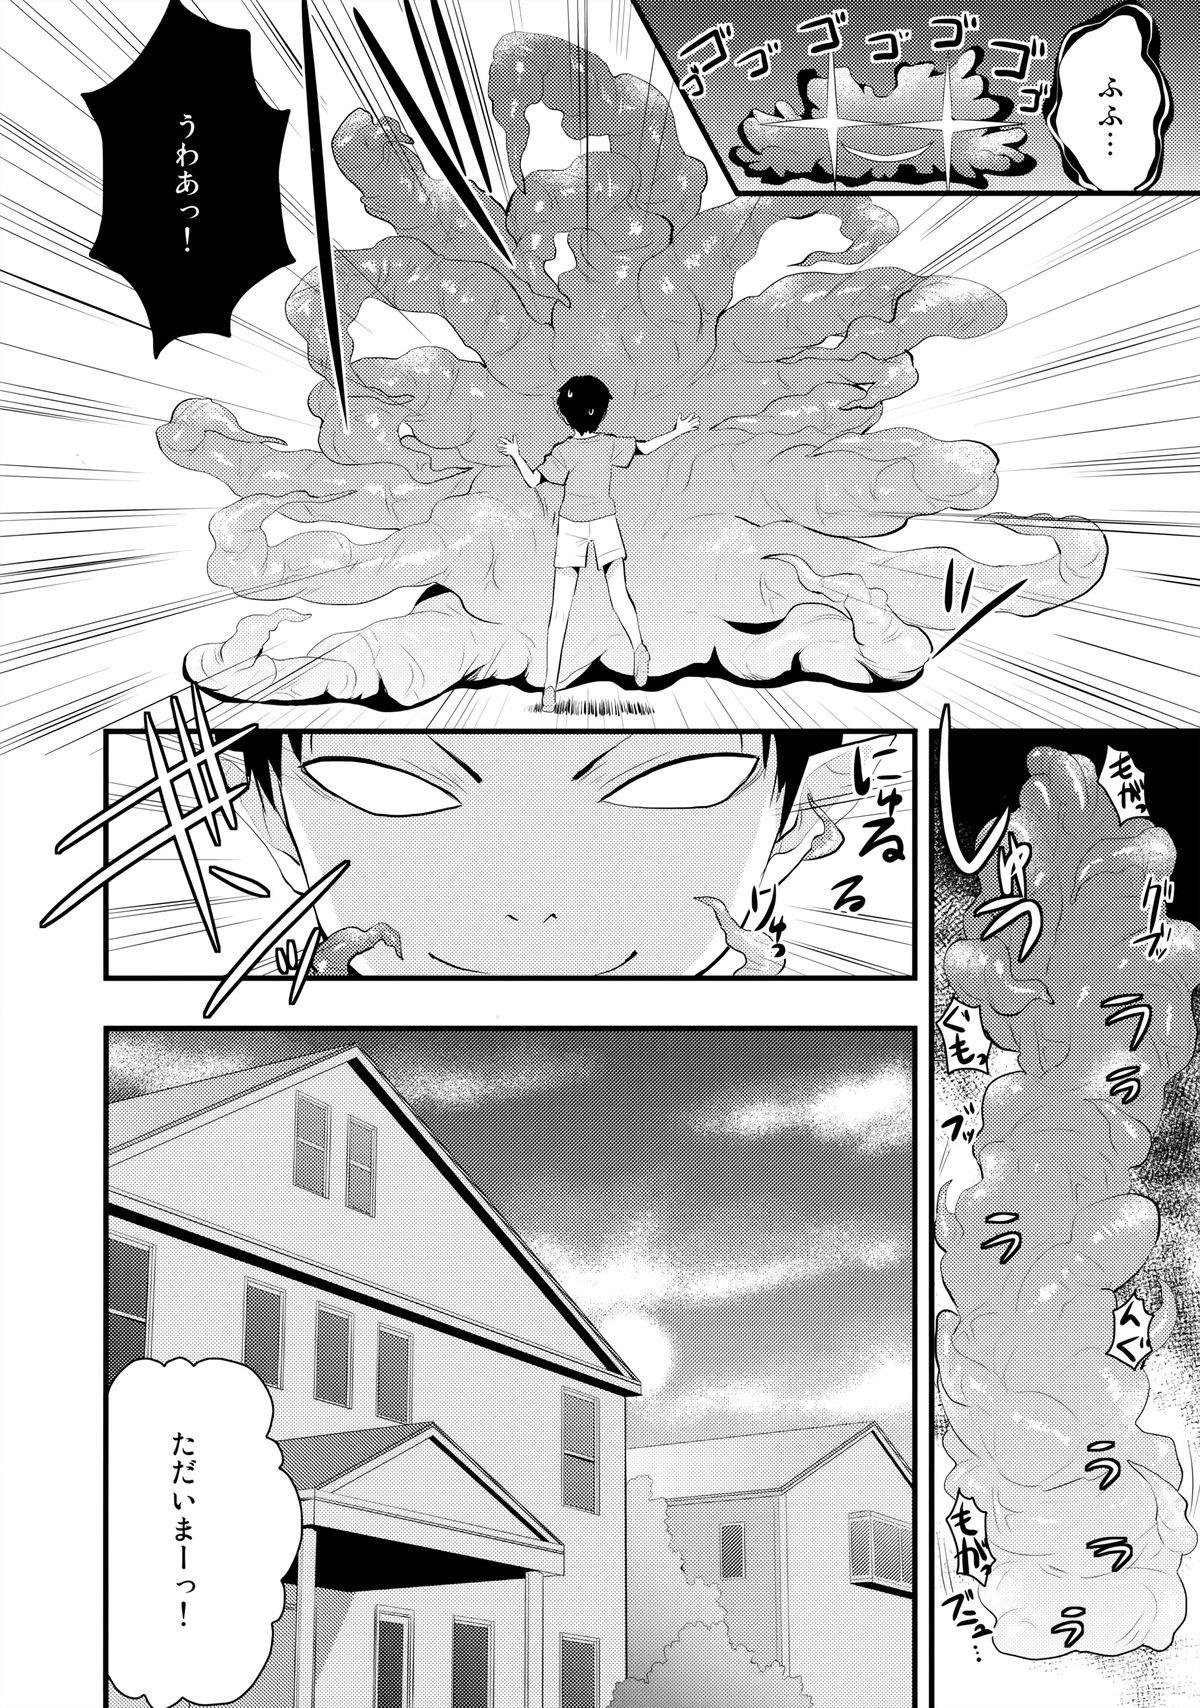 Hard Core Free Porn Minako no Ikenai Natsu - Sailor moon Teenxxx - Page 3